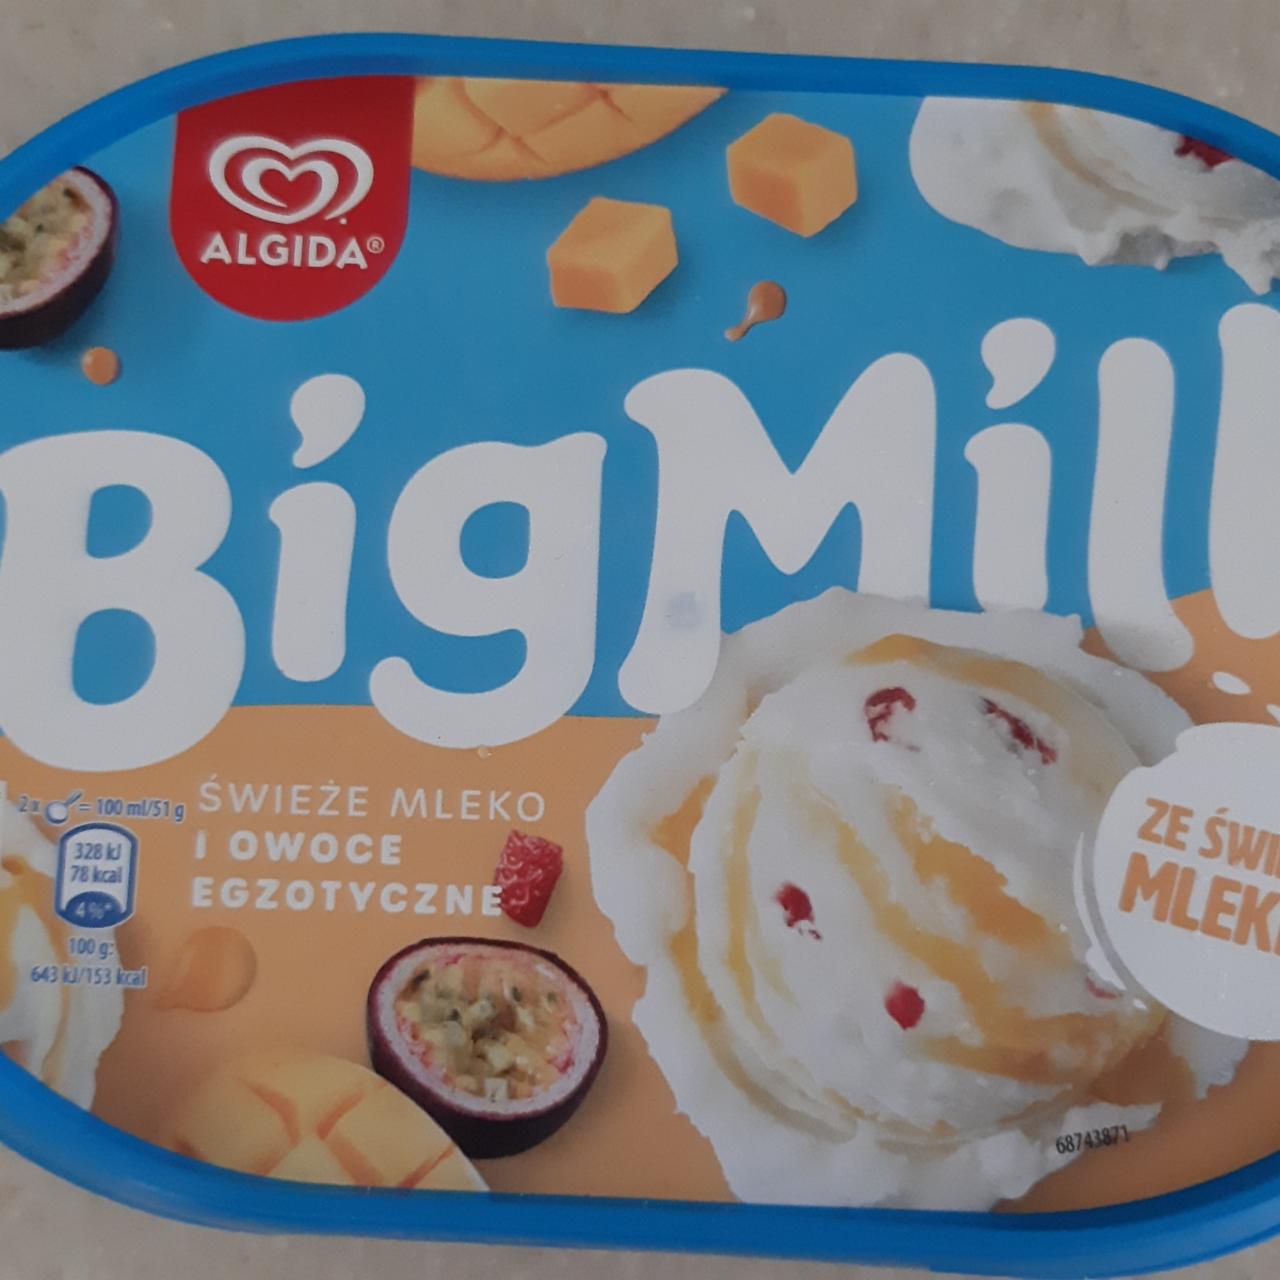 Фото - Big milk świeże mleko i owoce egzotyczne Algida